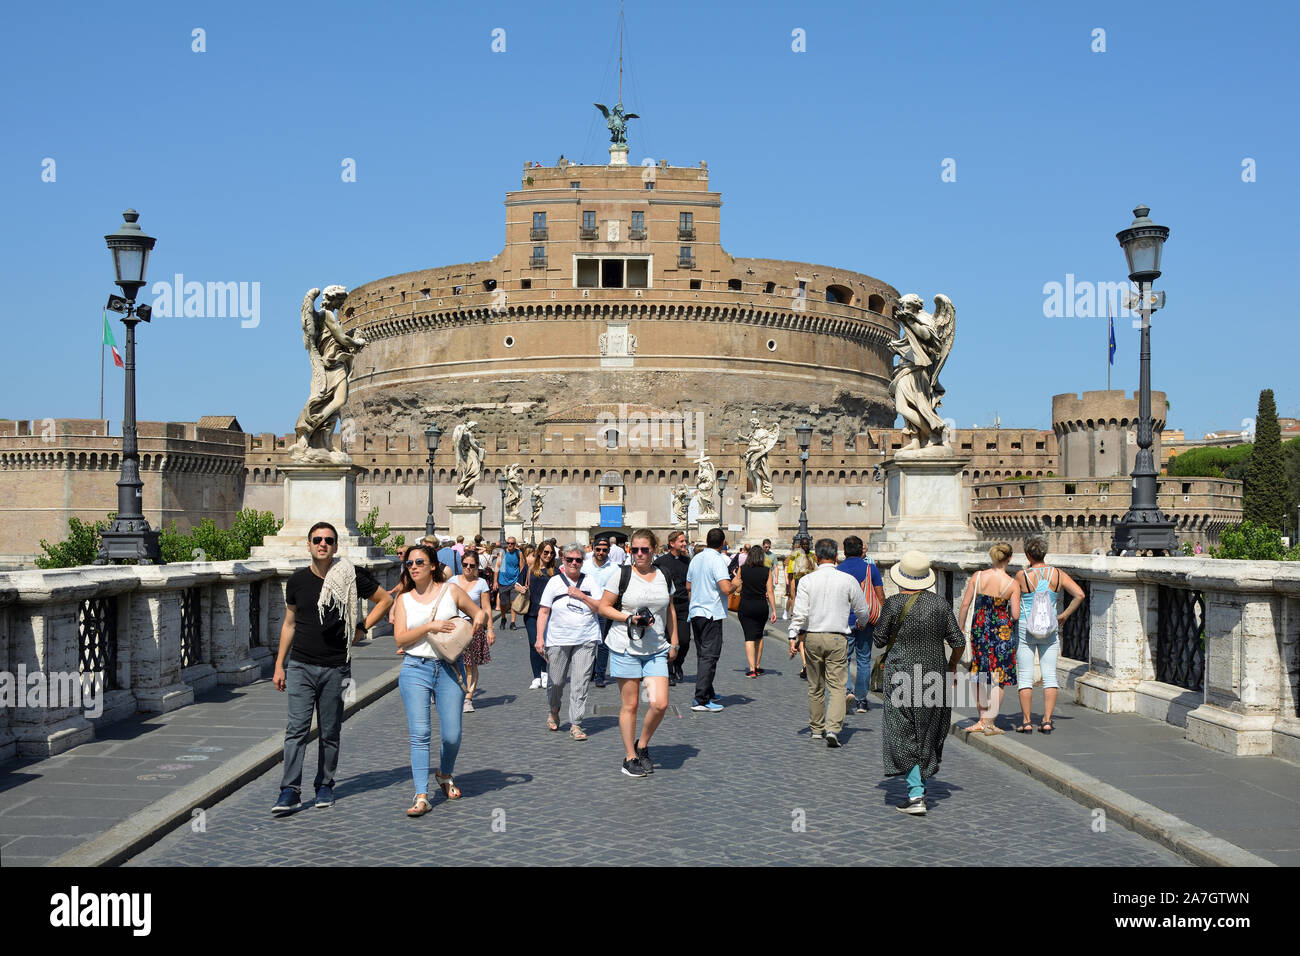 Les touristes sur le pont avant l'Ange Ange château avec le Musée National de Rome - Italie. Banque D'Images